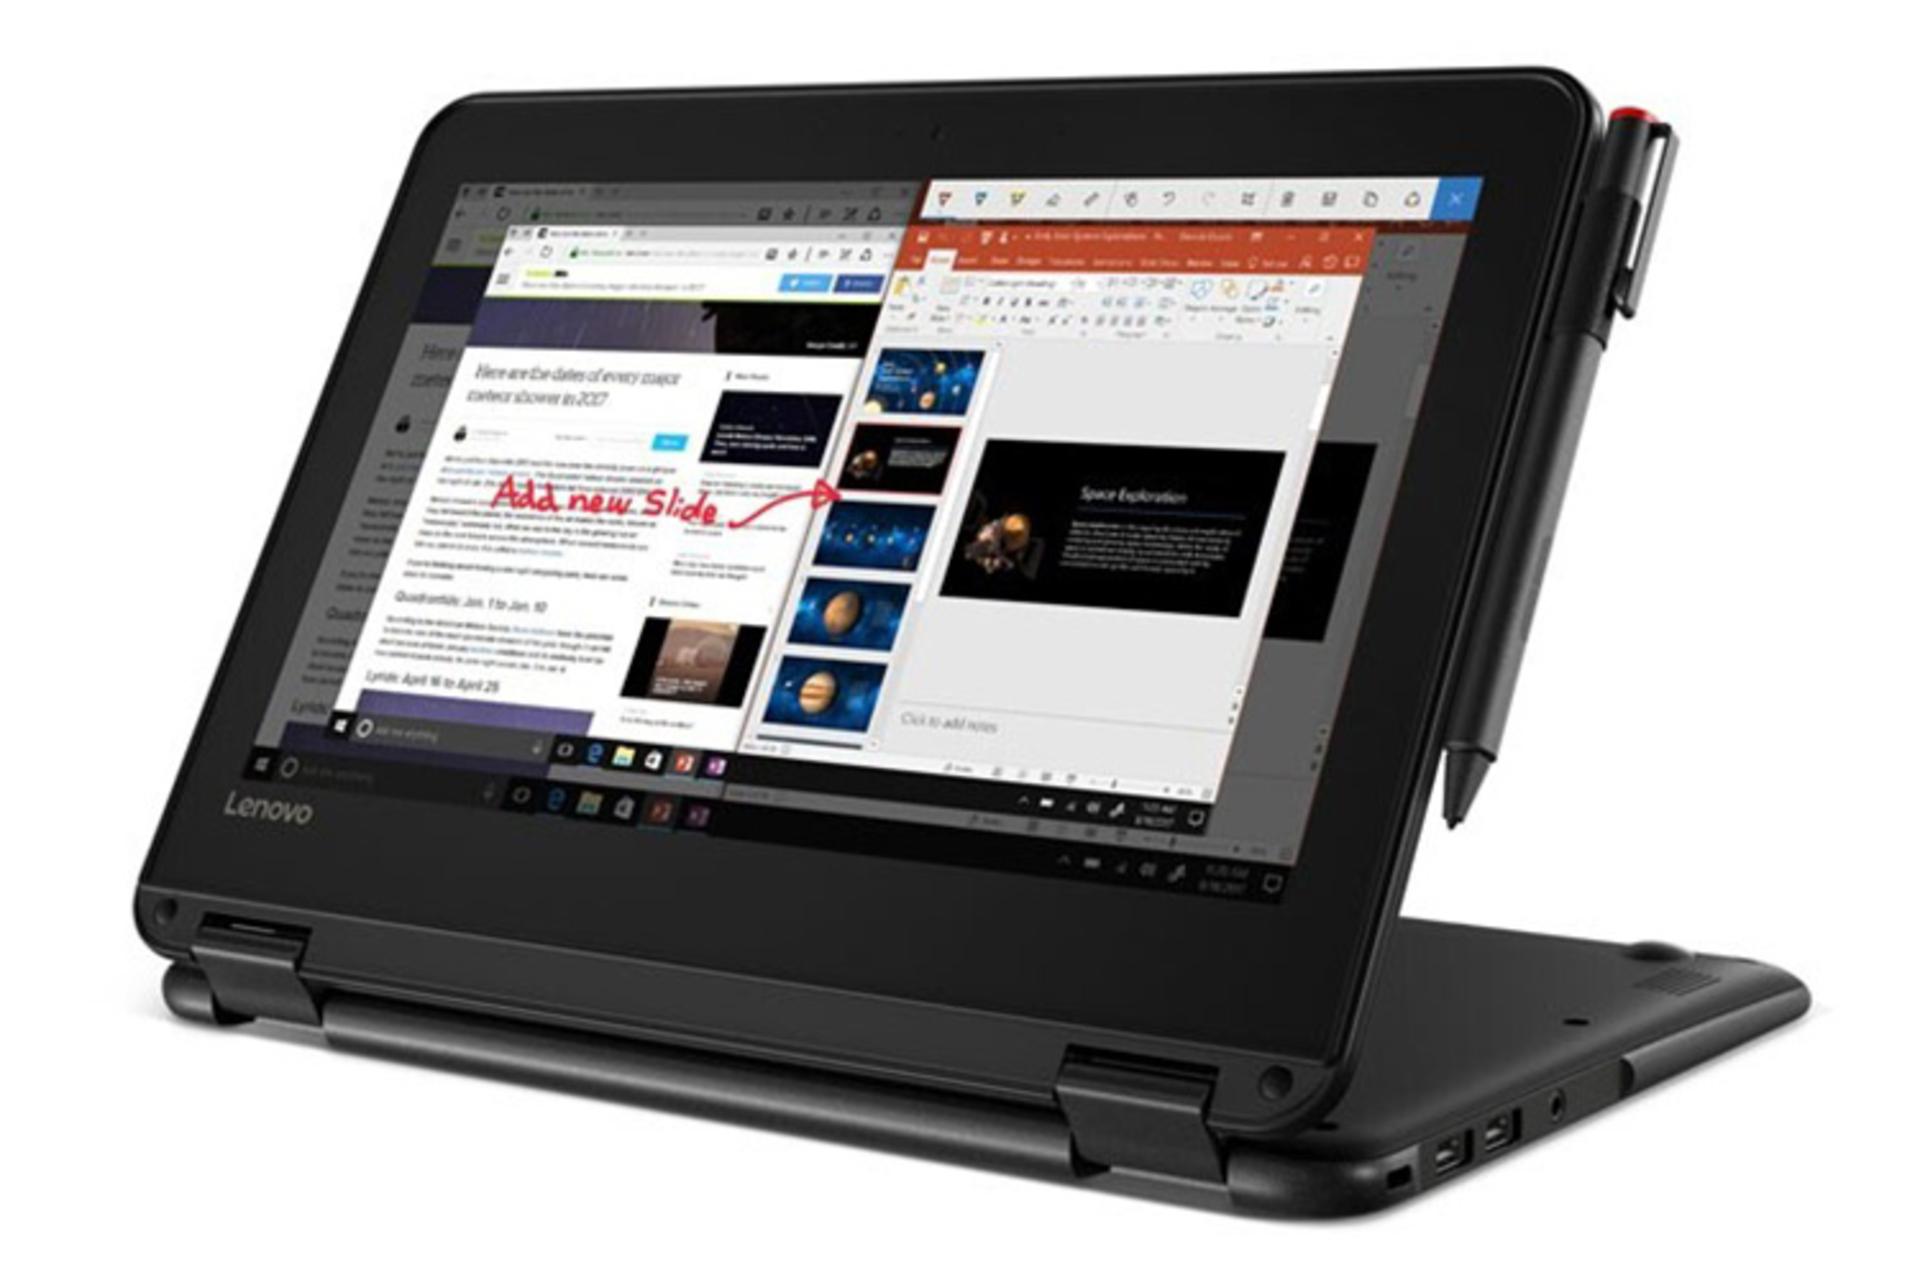 لپ تاپ لنوو 300e در حالت باز و نمایش استایلوس